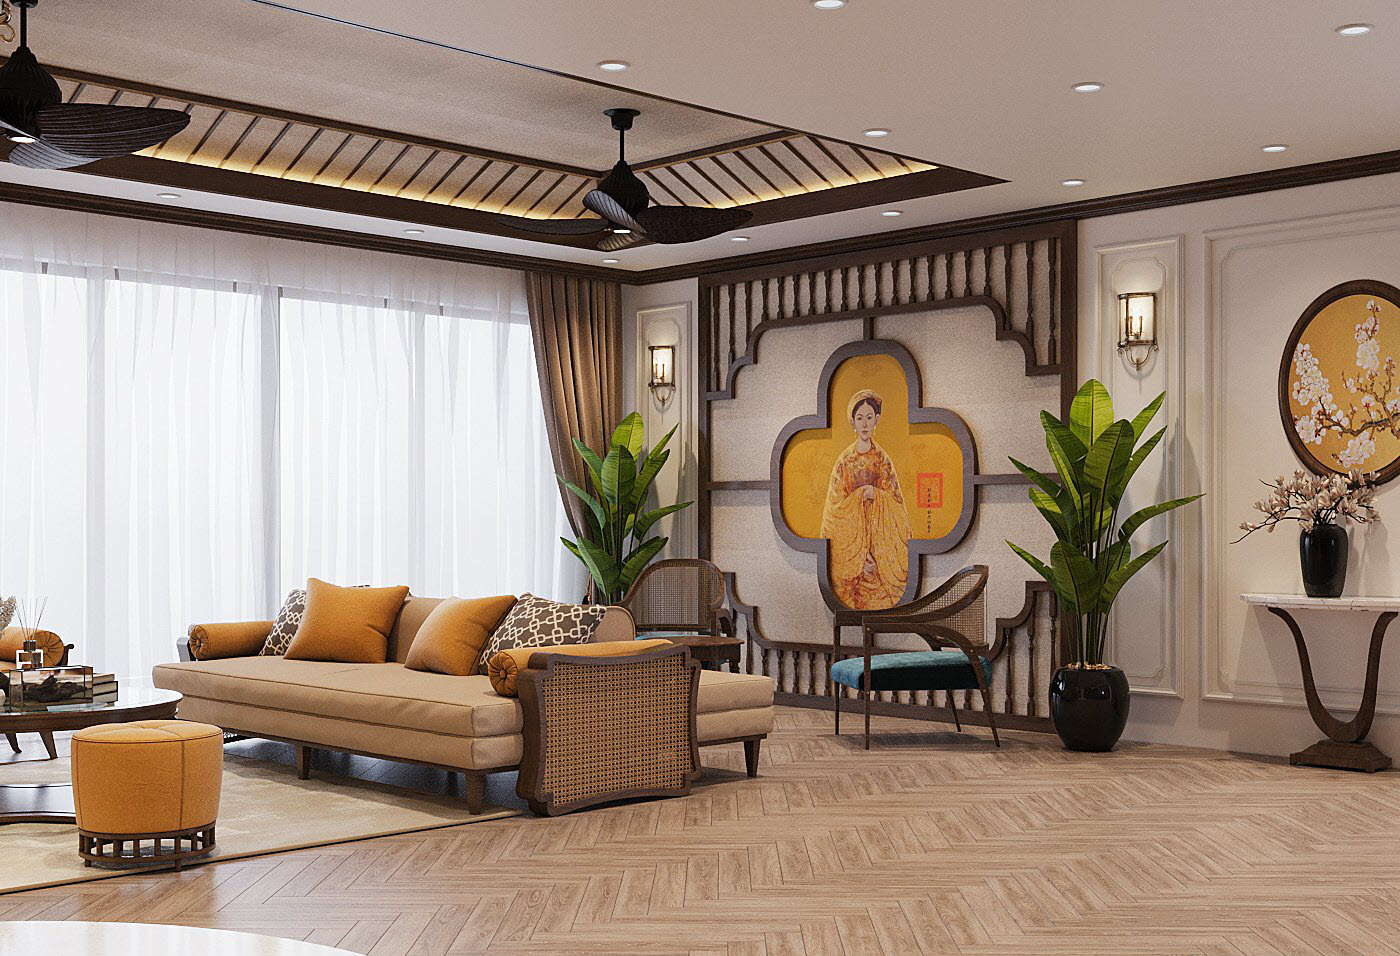 Thiết kế trần thạch cao kết hợp chất liệu gỗ sẫm màu mang lại cảm giác cao thoáng hơn cho căn phòng. Những chậu cảnh xanh tươi tạo bầu không khí vui tươi, mát mẻ.